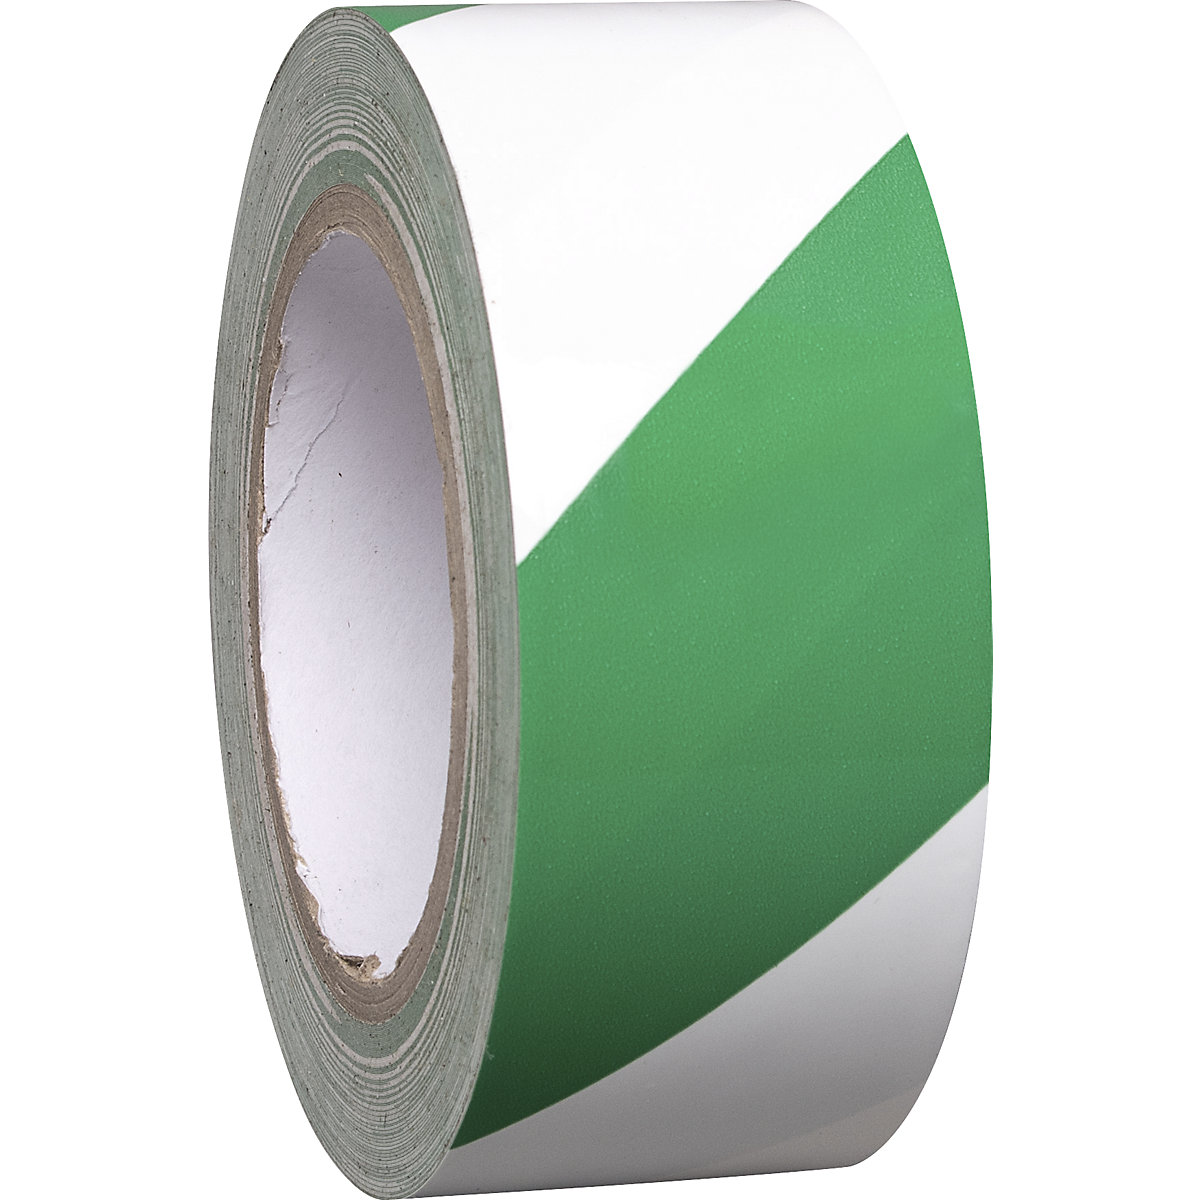 Fita de marcação em vinil para pisos, duas cores, largura 50 mm, verde / branco, embalagem de 8 rolos-4